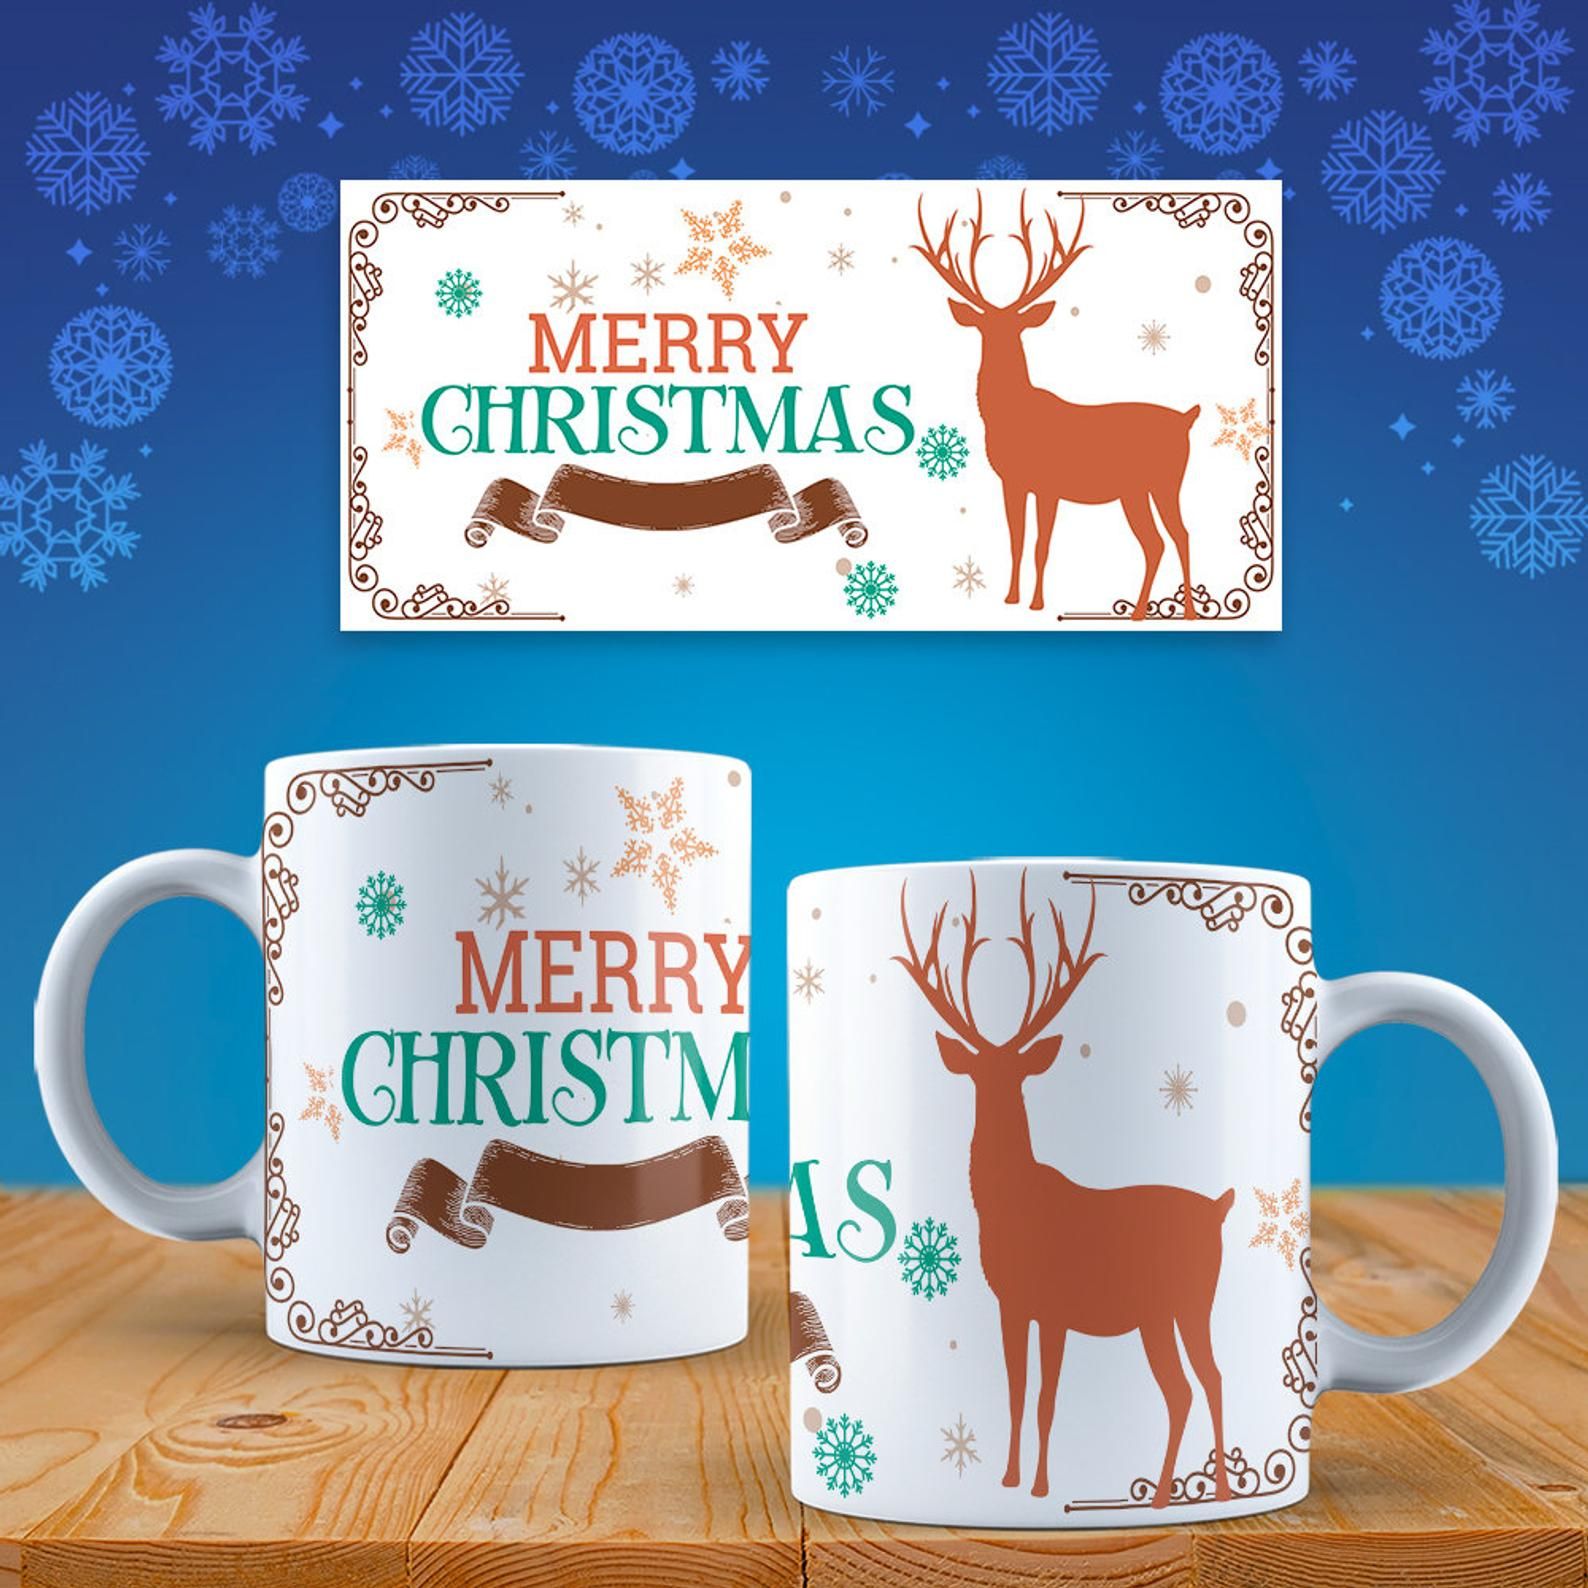 christmas mug design template